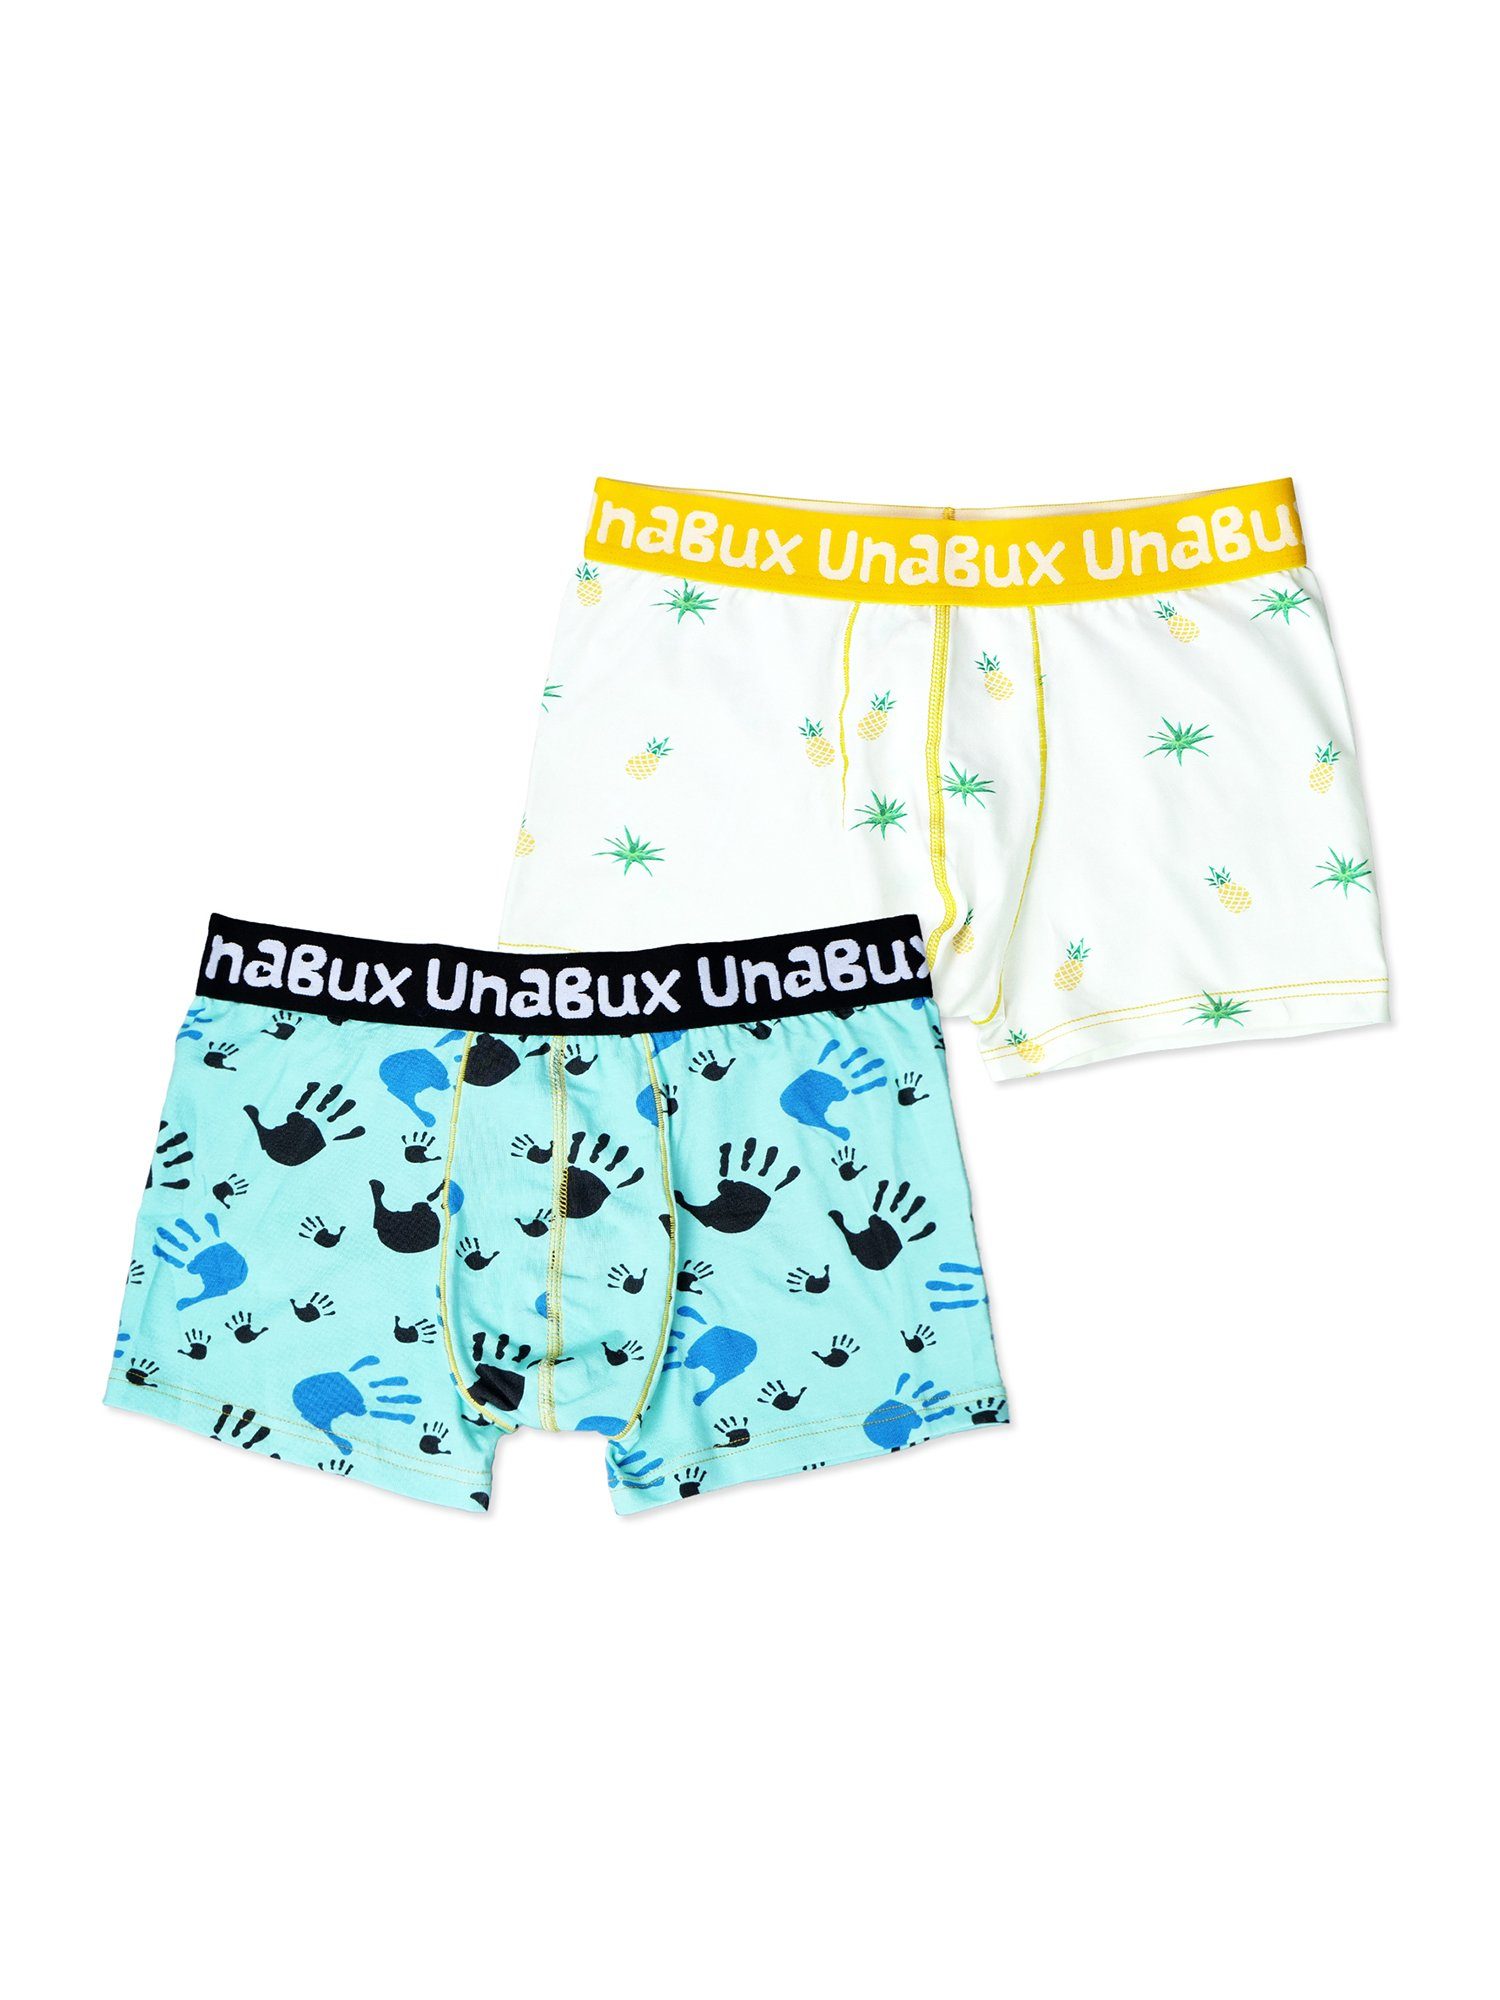 UnaBux Retro Pants Boxer Briefs FIVE FINGERS Mix (2-St)